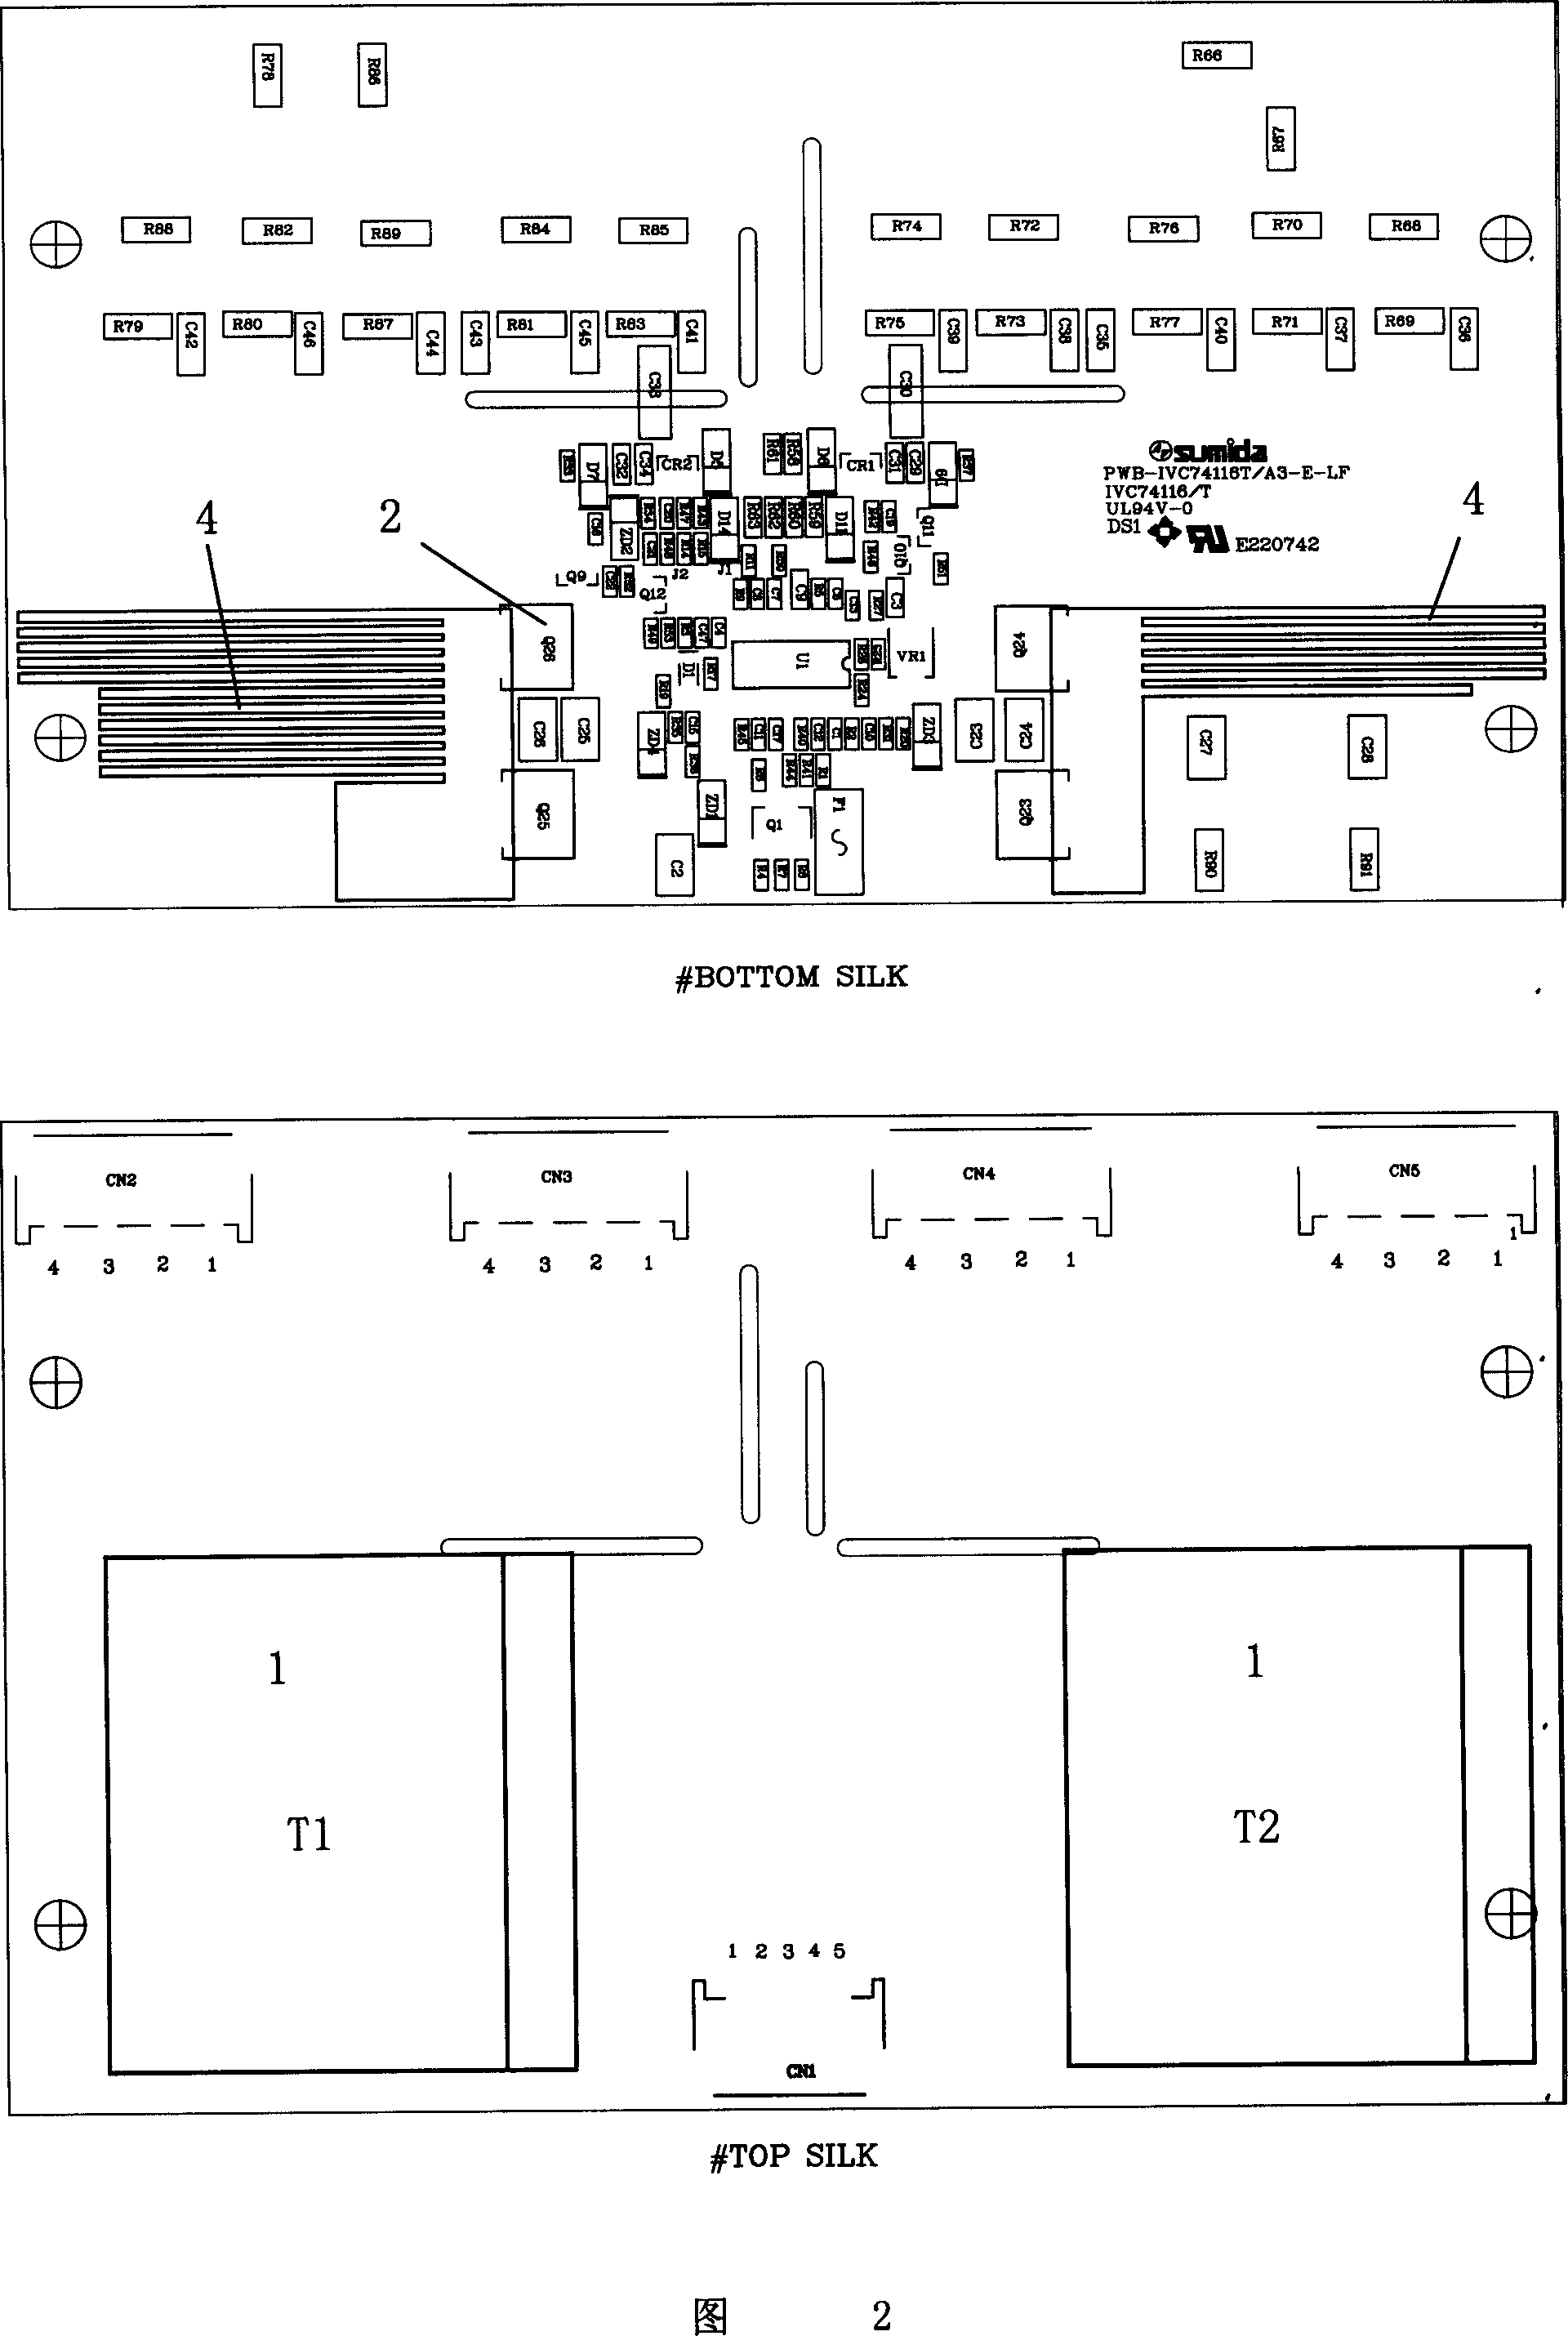 Gap-type printed circuit board radiating layout